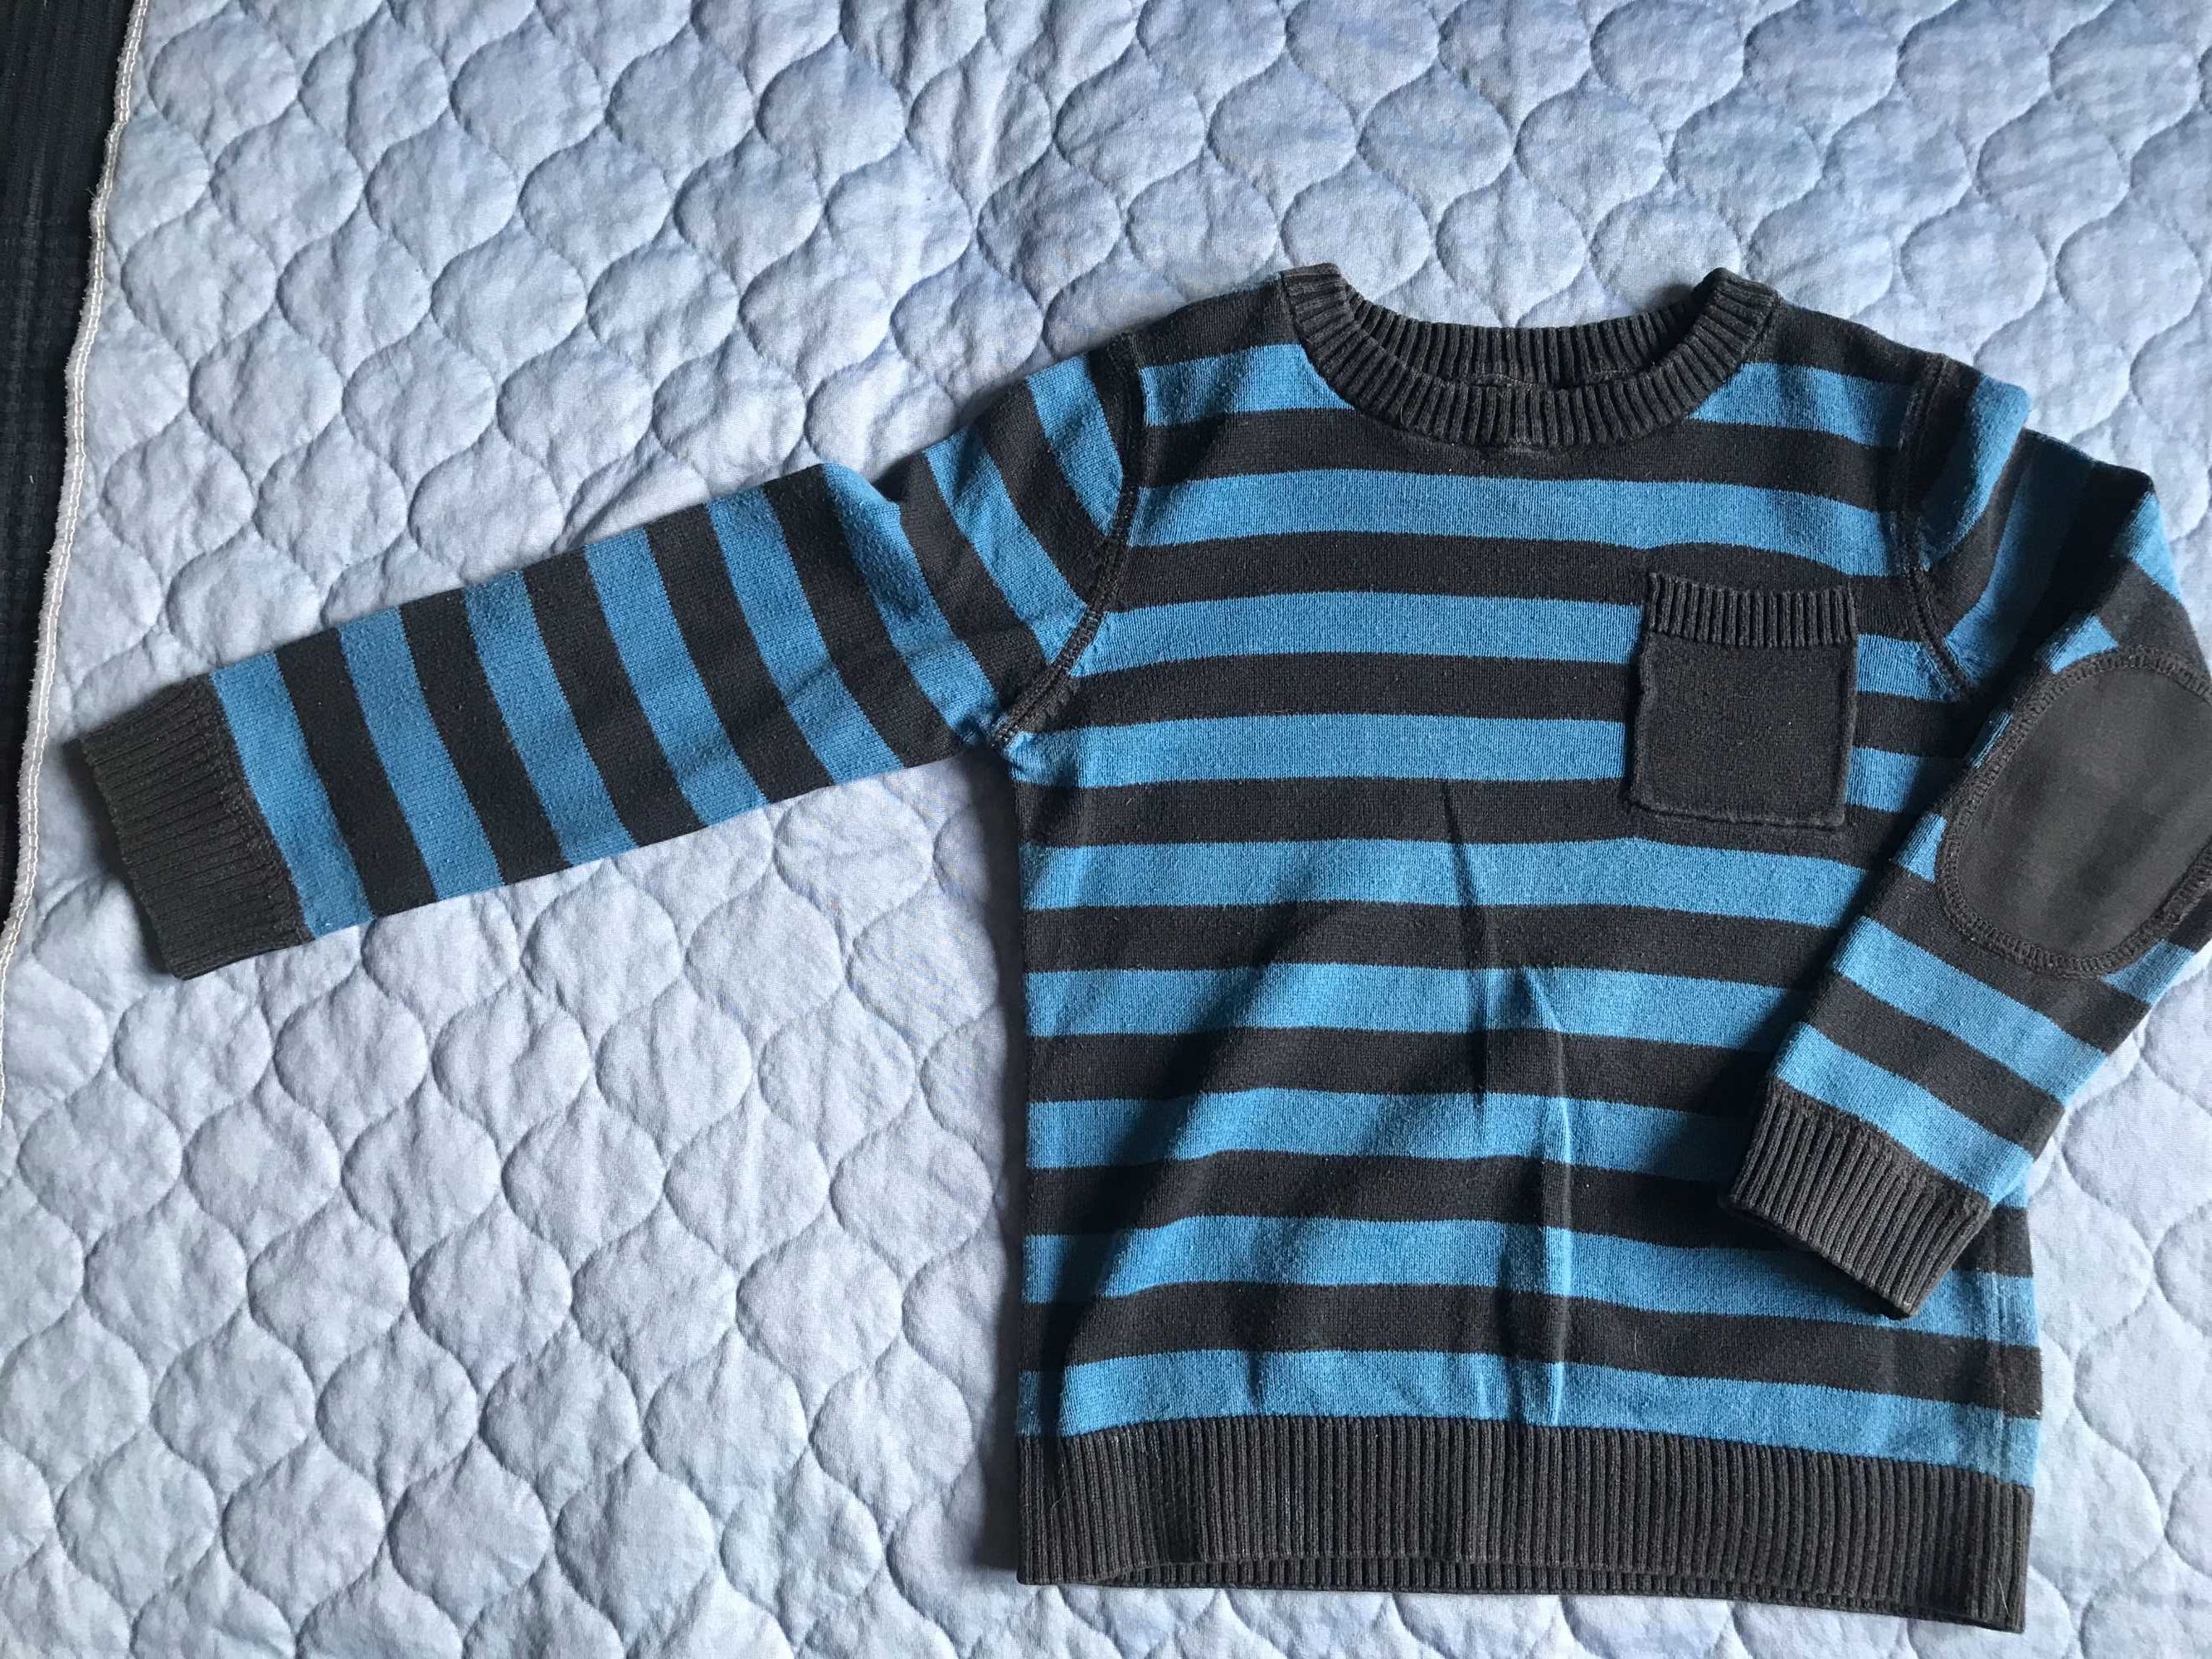 Sweterki, dwie sztuki, bawełniane, cieńsze, rozmiar 98